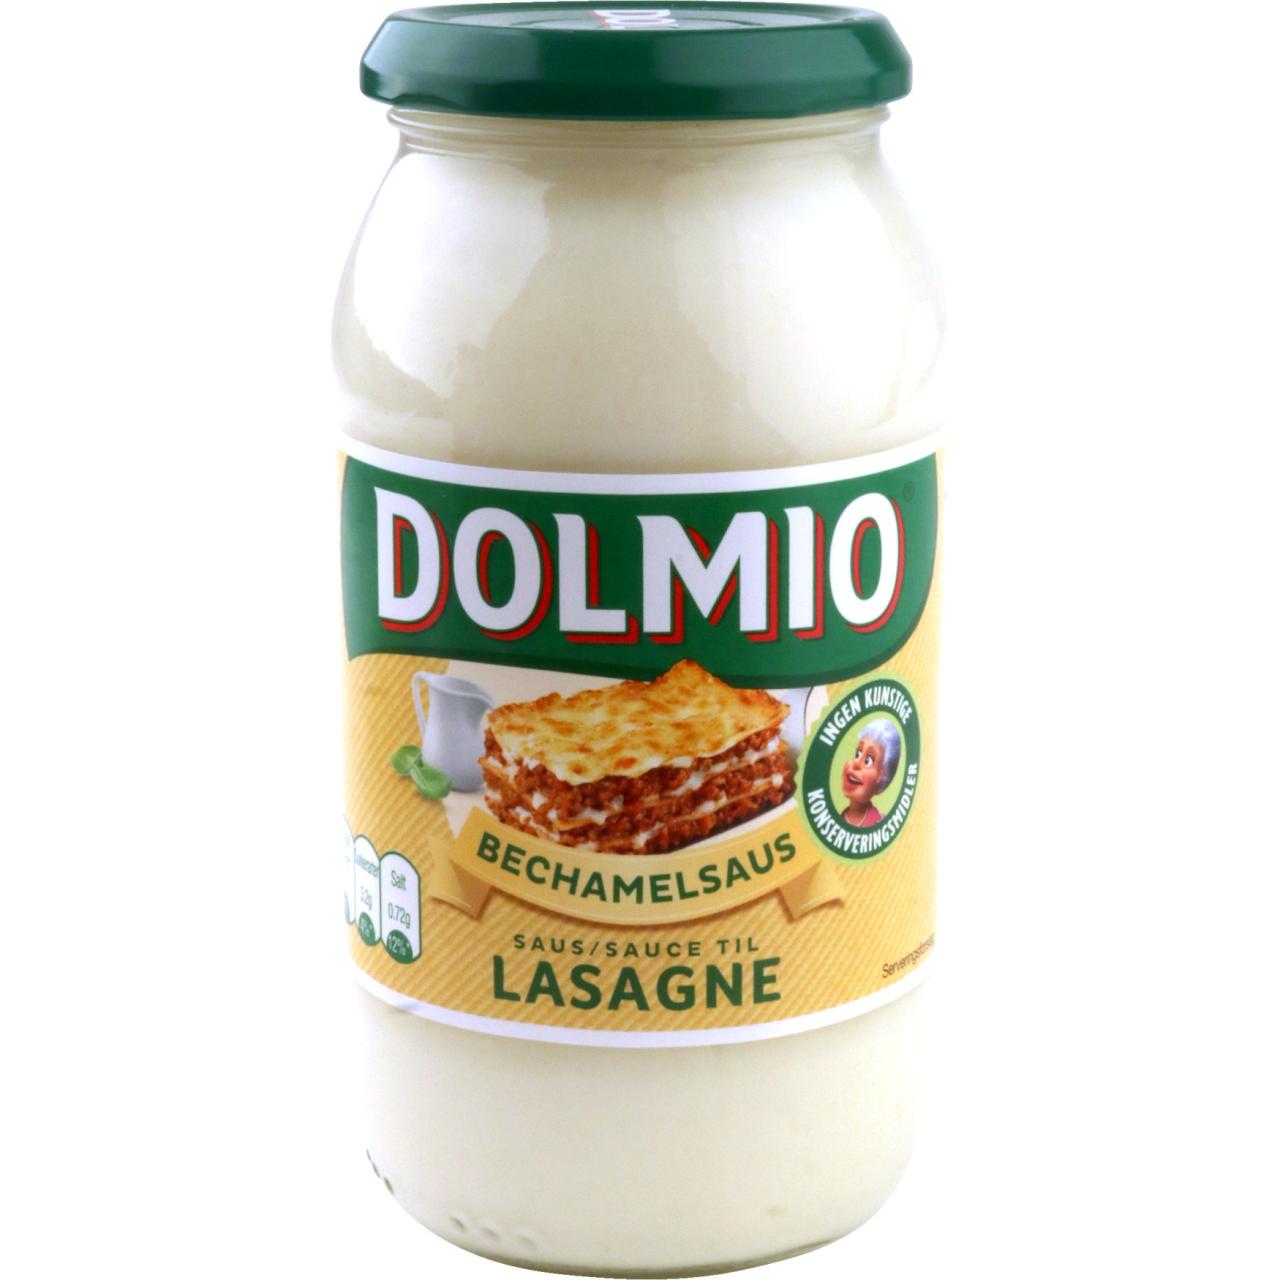 Dolmio Bechamelsauce til Lasagne 470g